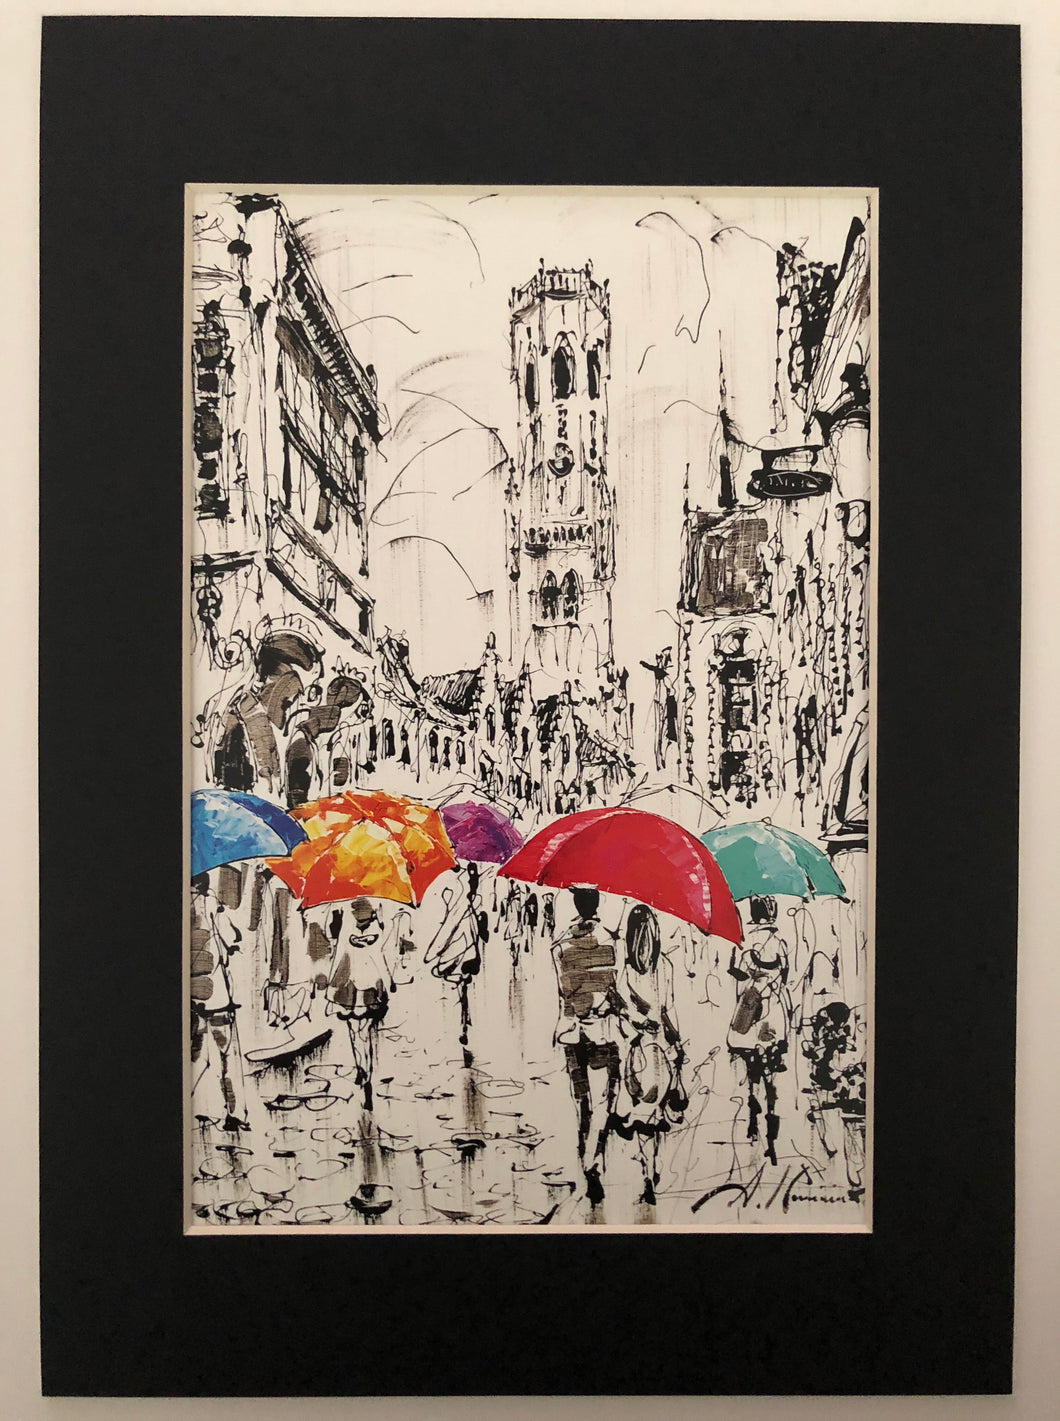 Bruges colourful umbrellas